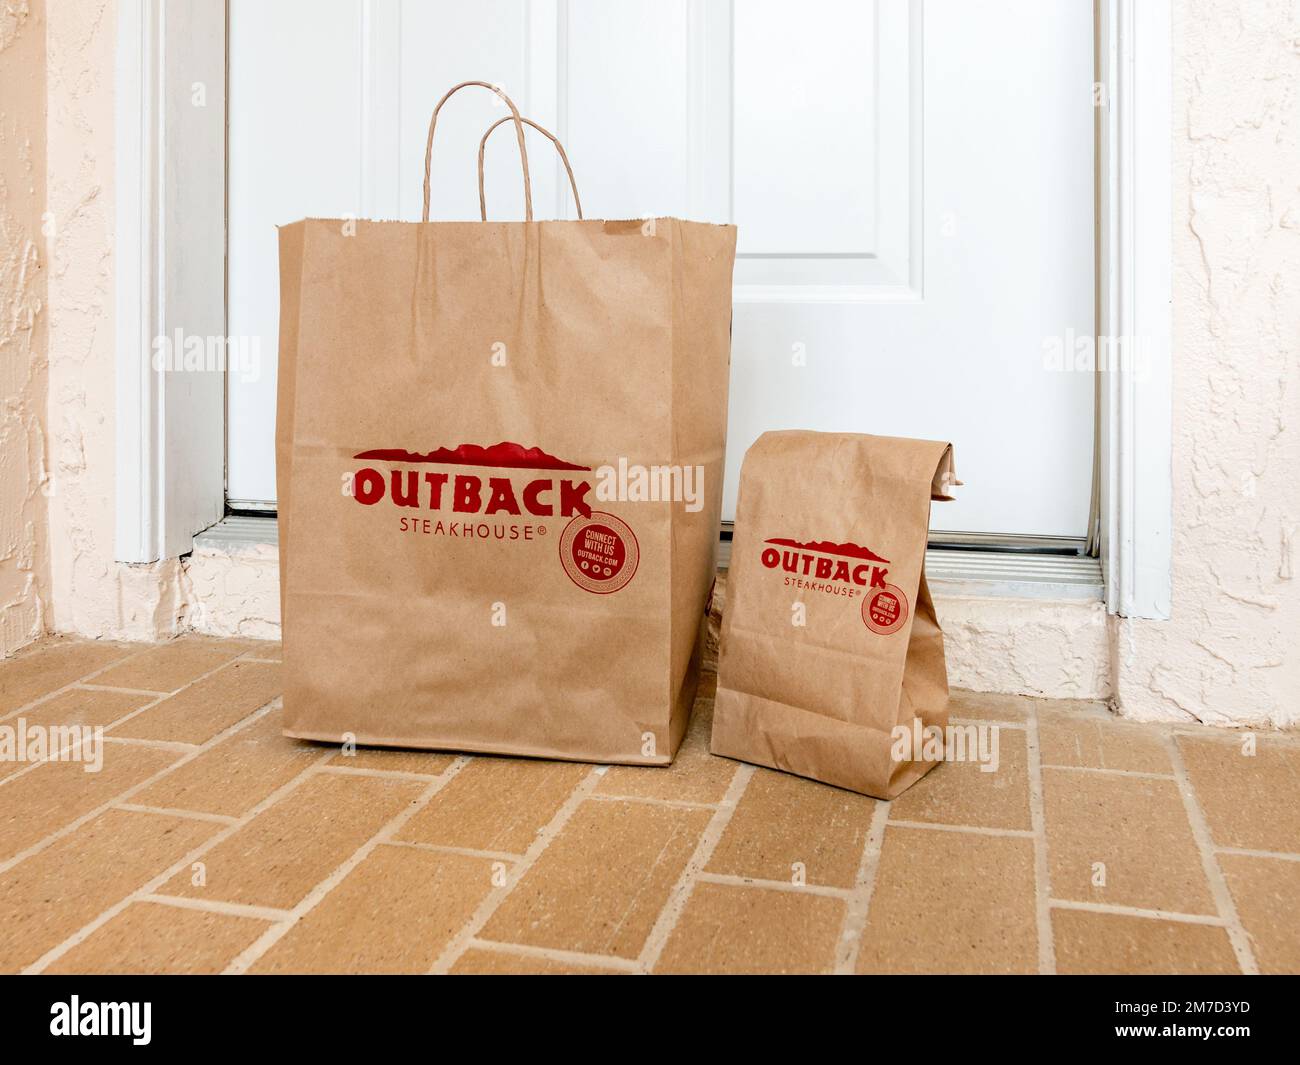 Outback Steakhouse, Speisen zum Mitnehmen, Lieferung direkt vor die Haustür. Stockfoto